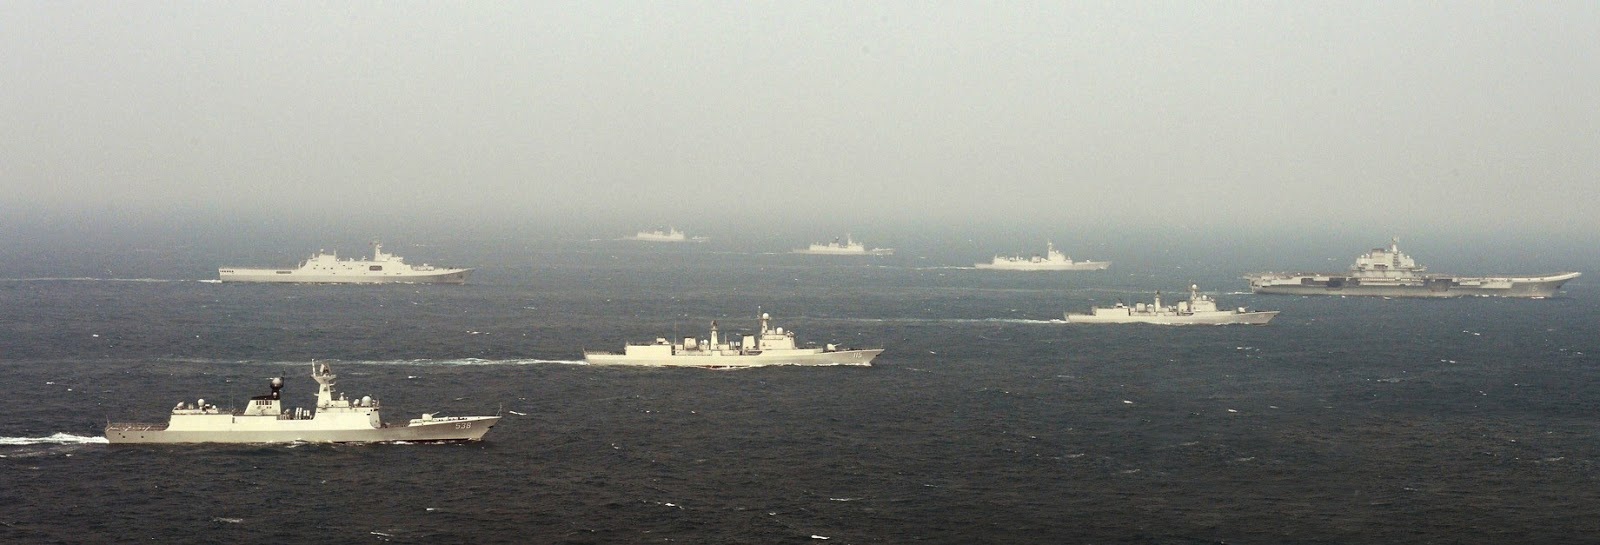 2020年中国海军实力近乎无敌 除美军外吊打所